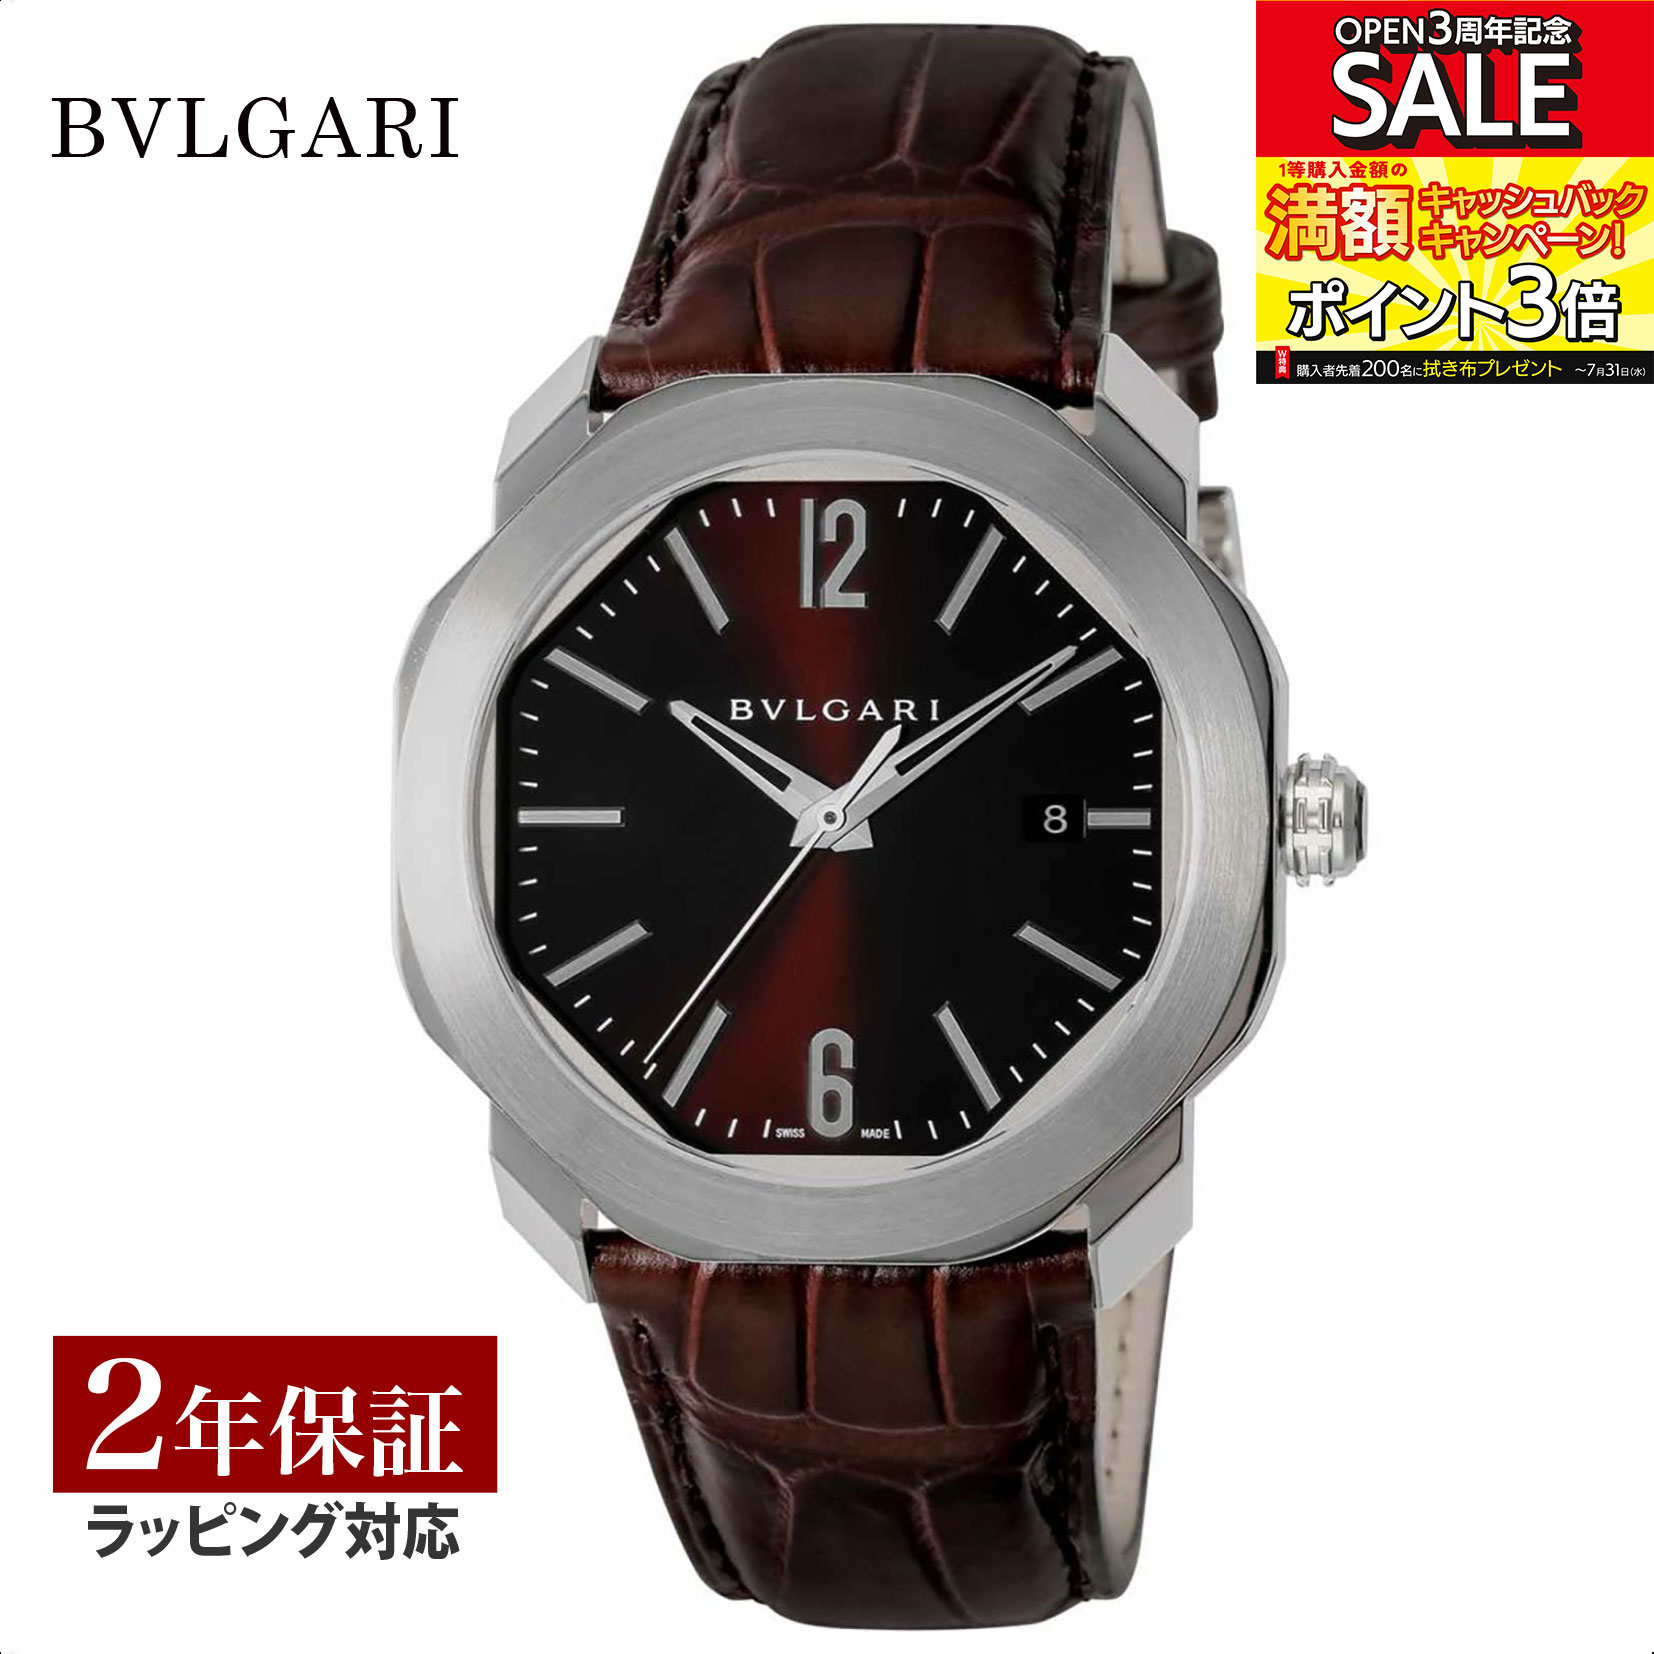 ブルガリ BVLGARI メンズ 時計 Octo オクト 自動巻 ブラウン OC41C1SLD 時計 腕時計 高級腕時計 ブランド 【ローン金利無料】